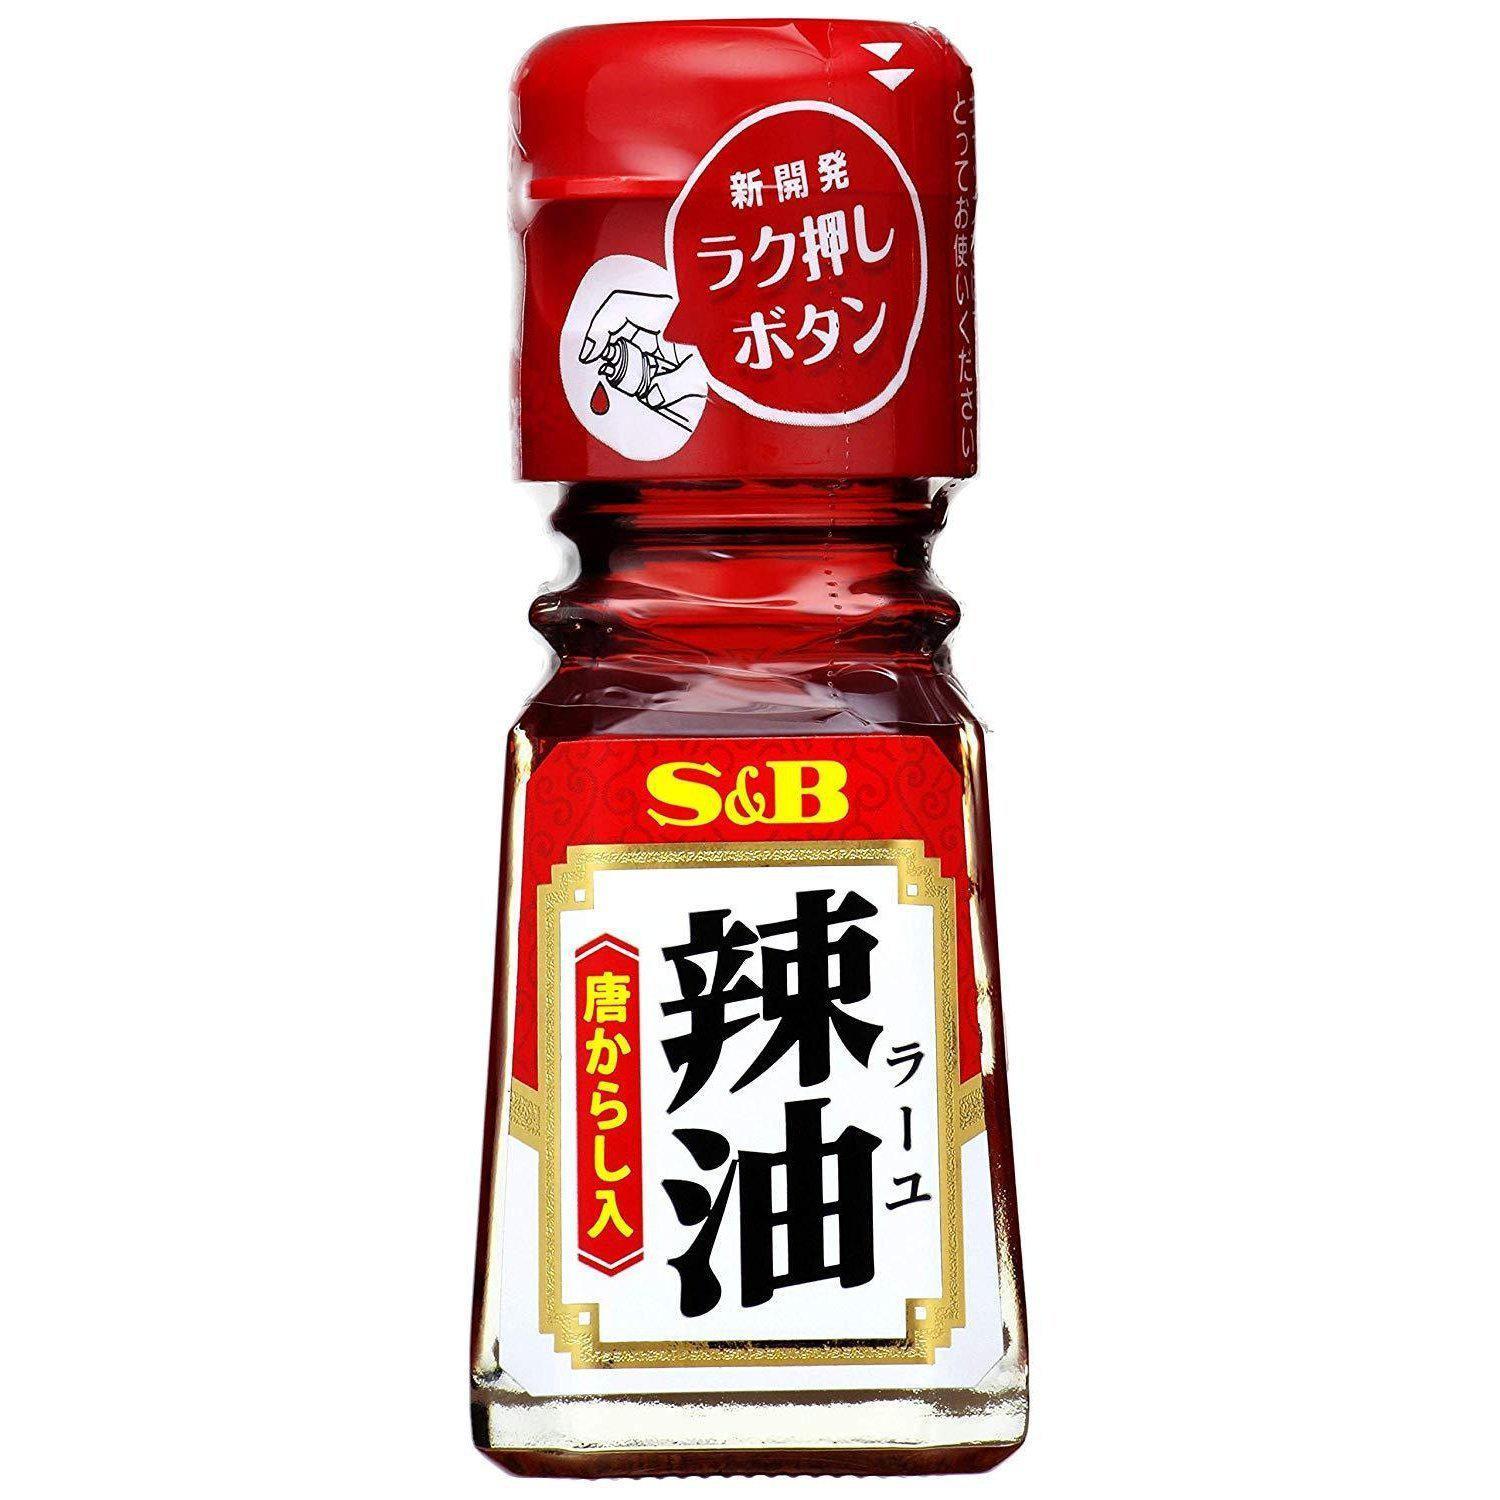 S&B Rayu Japanese Chili Oil 31g